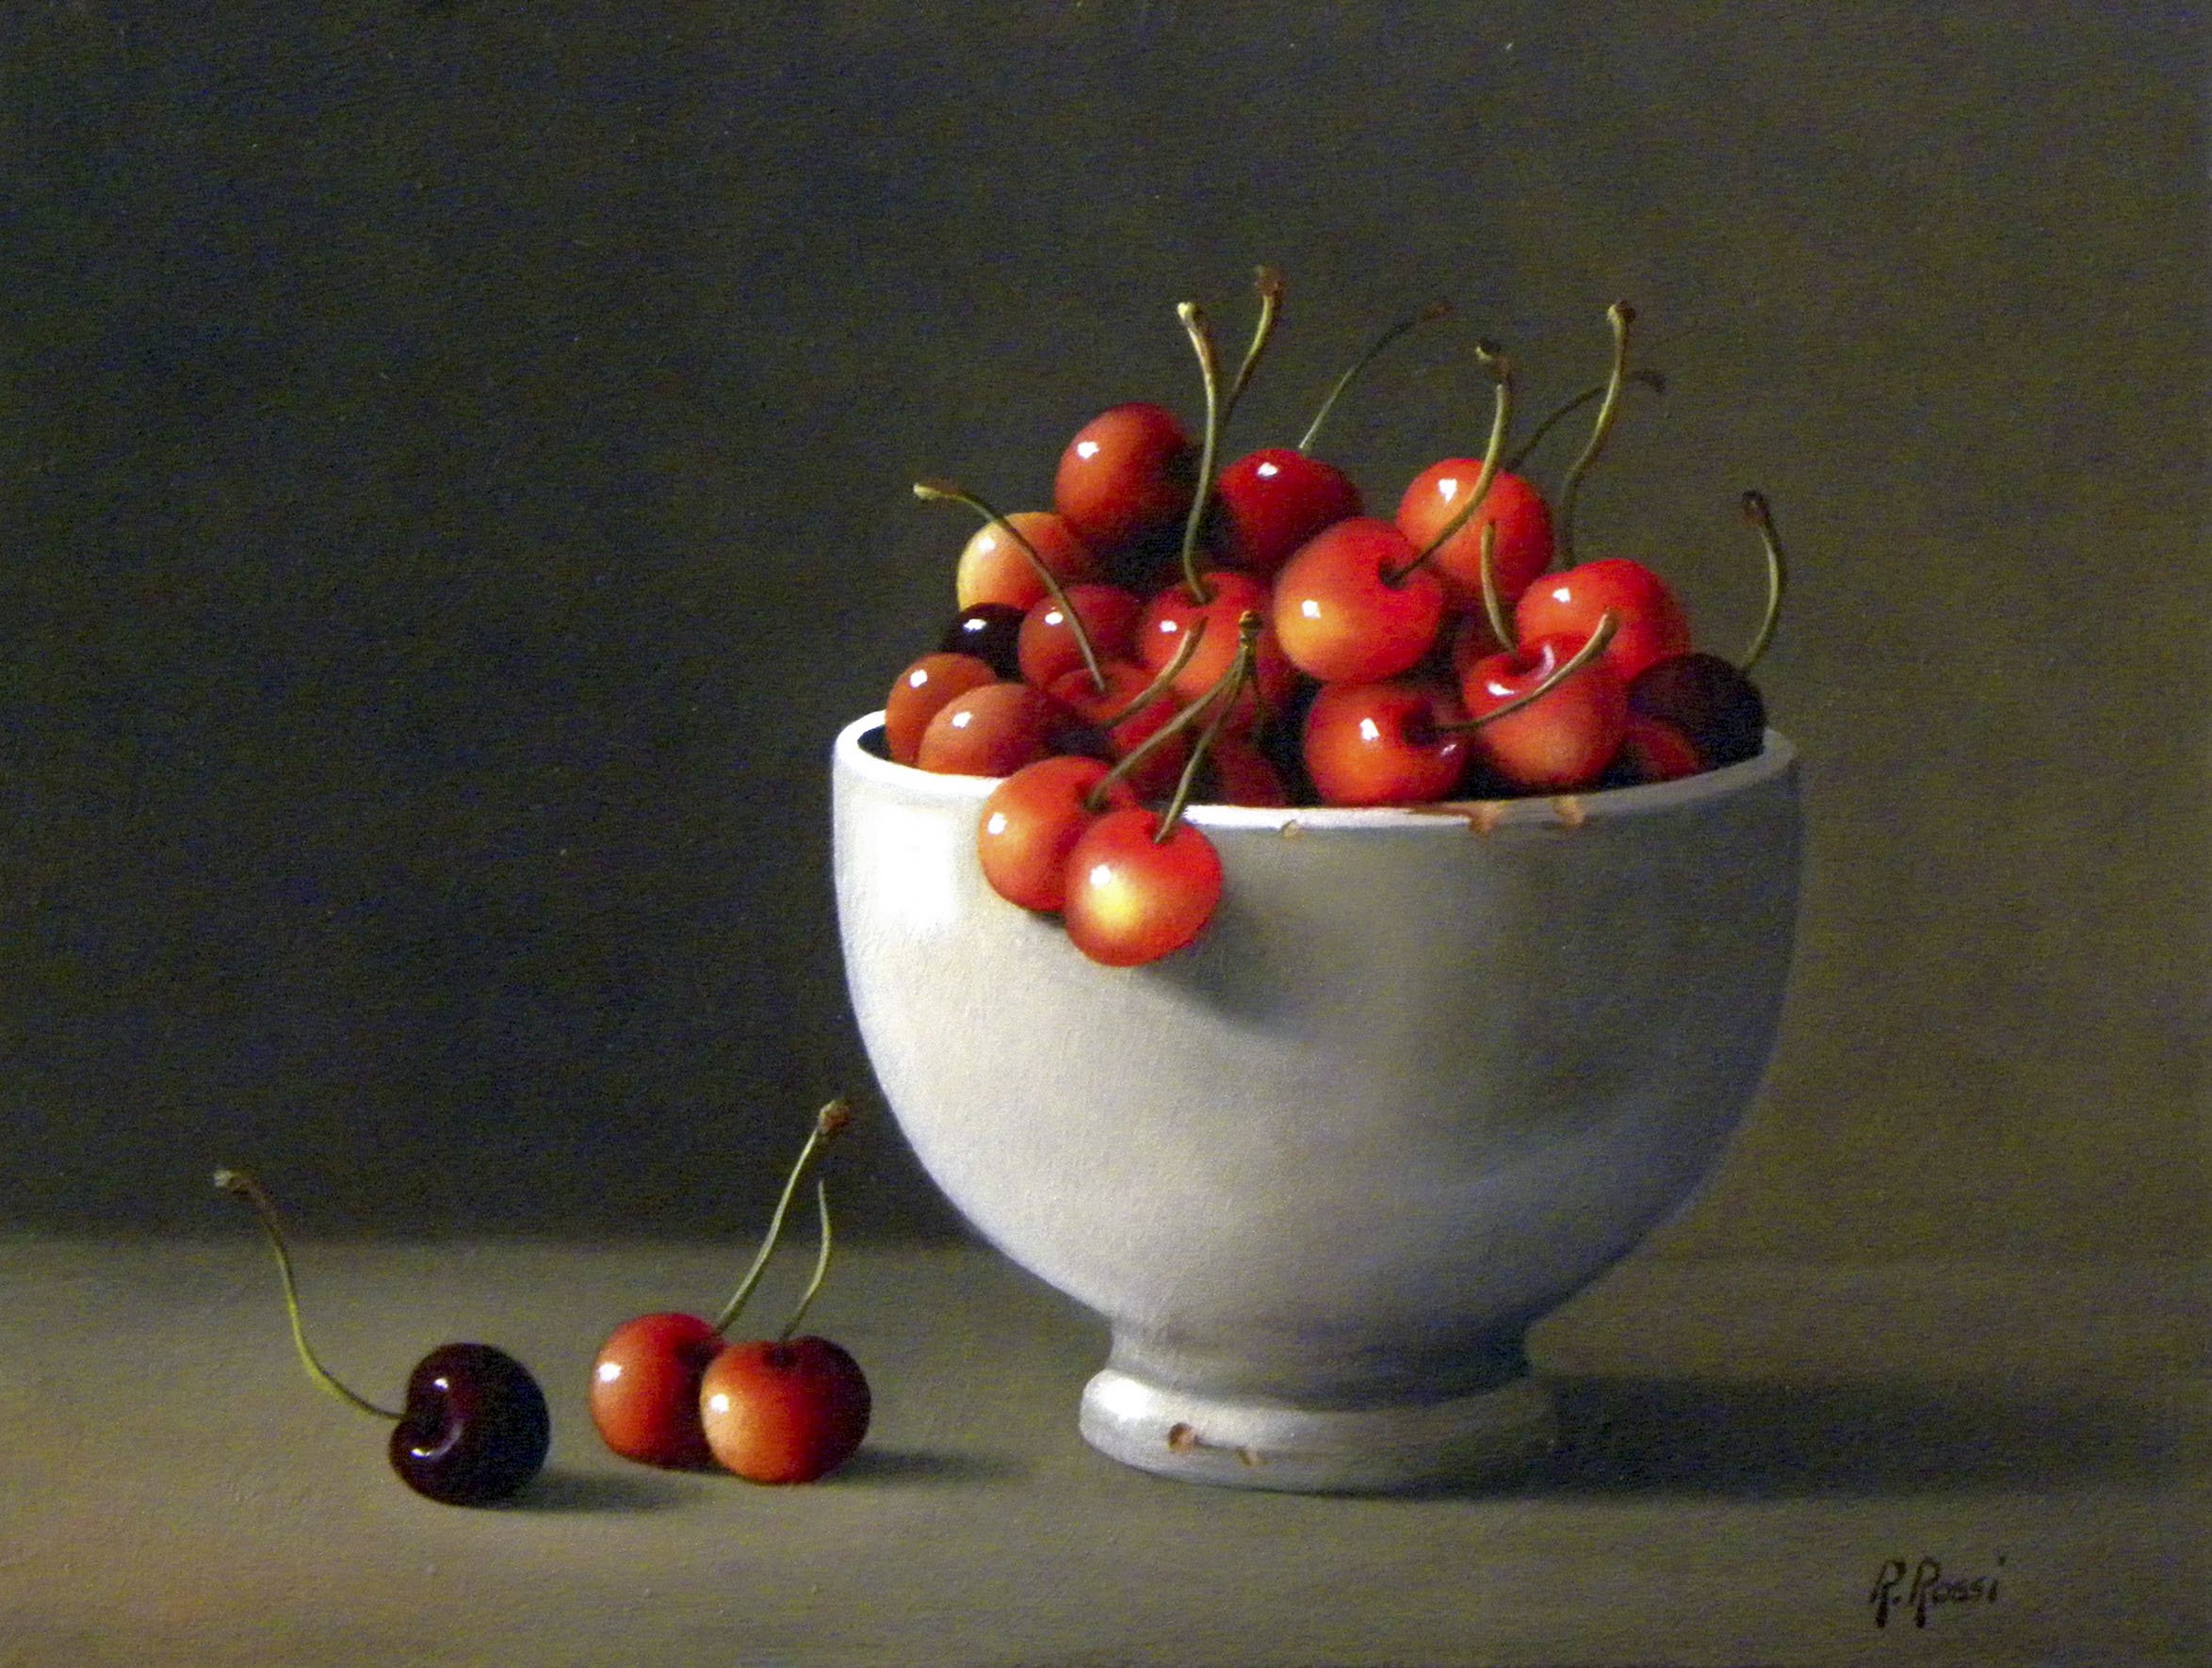 2015 roberta rossi – ciliege nella vecchia tazza – olio su tela applicata a cartone – 18 x 24